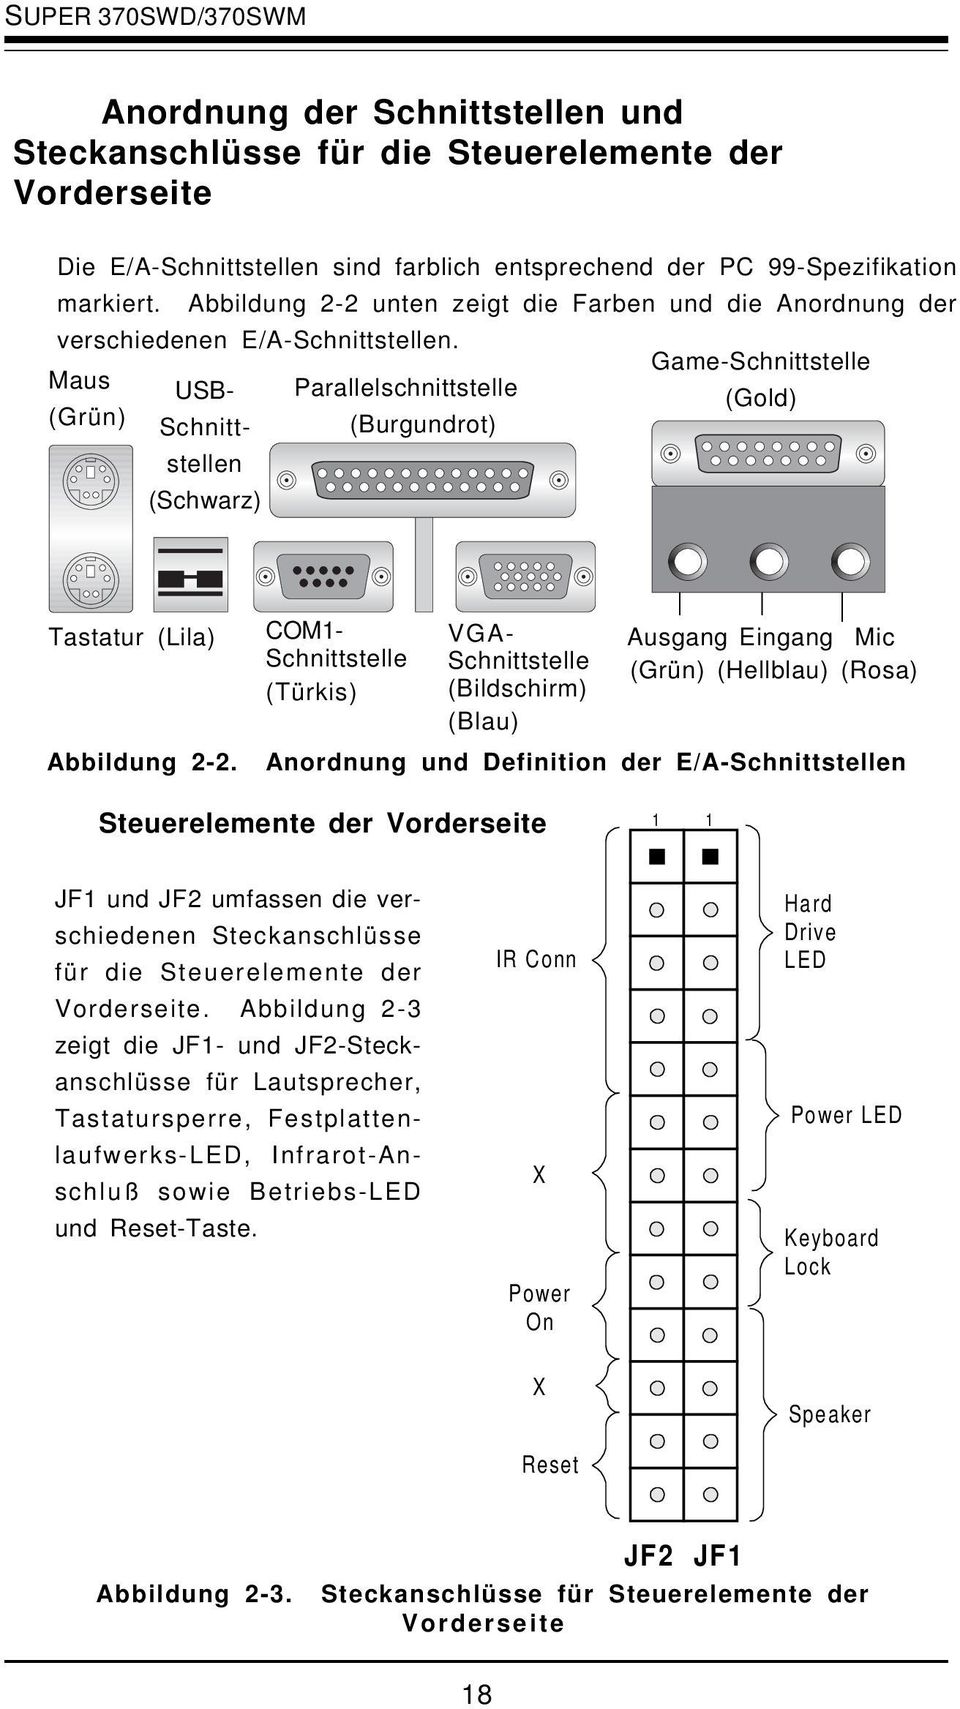 Game-Schnittstelle Maus USB- Parallelschnittstelle (Gold) (Grün) Schnittstellen (Burgundrot) (Schwarz) VGA- Schnittstelle (Bildschirm) (Blau) Ausgang Eingang Mic (Grün) (Hellblau) (Rosa) Abbildung